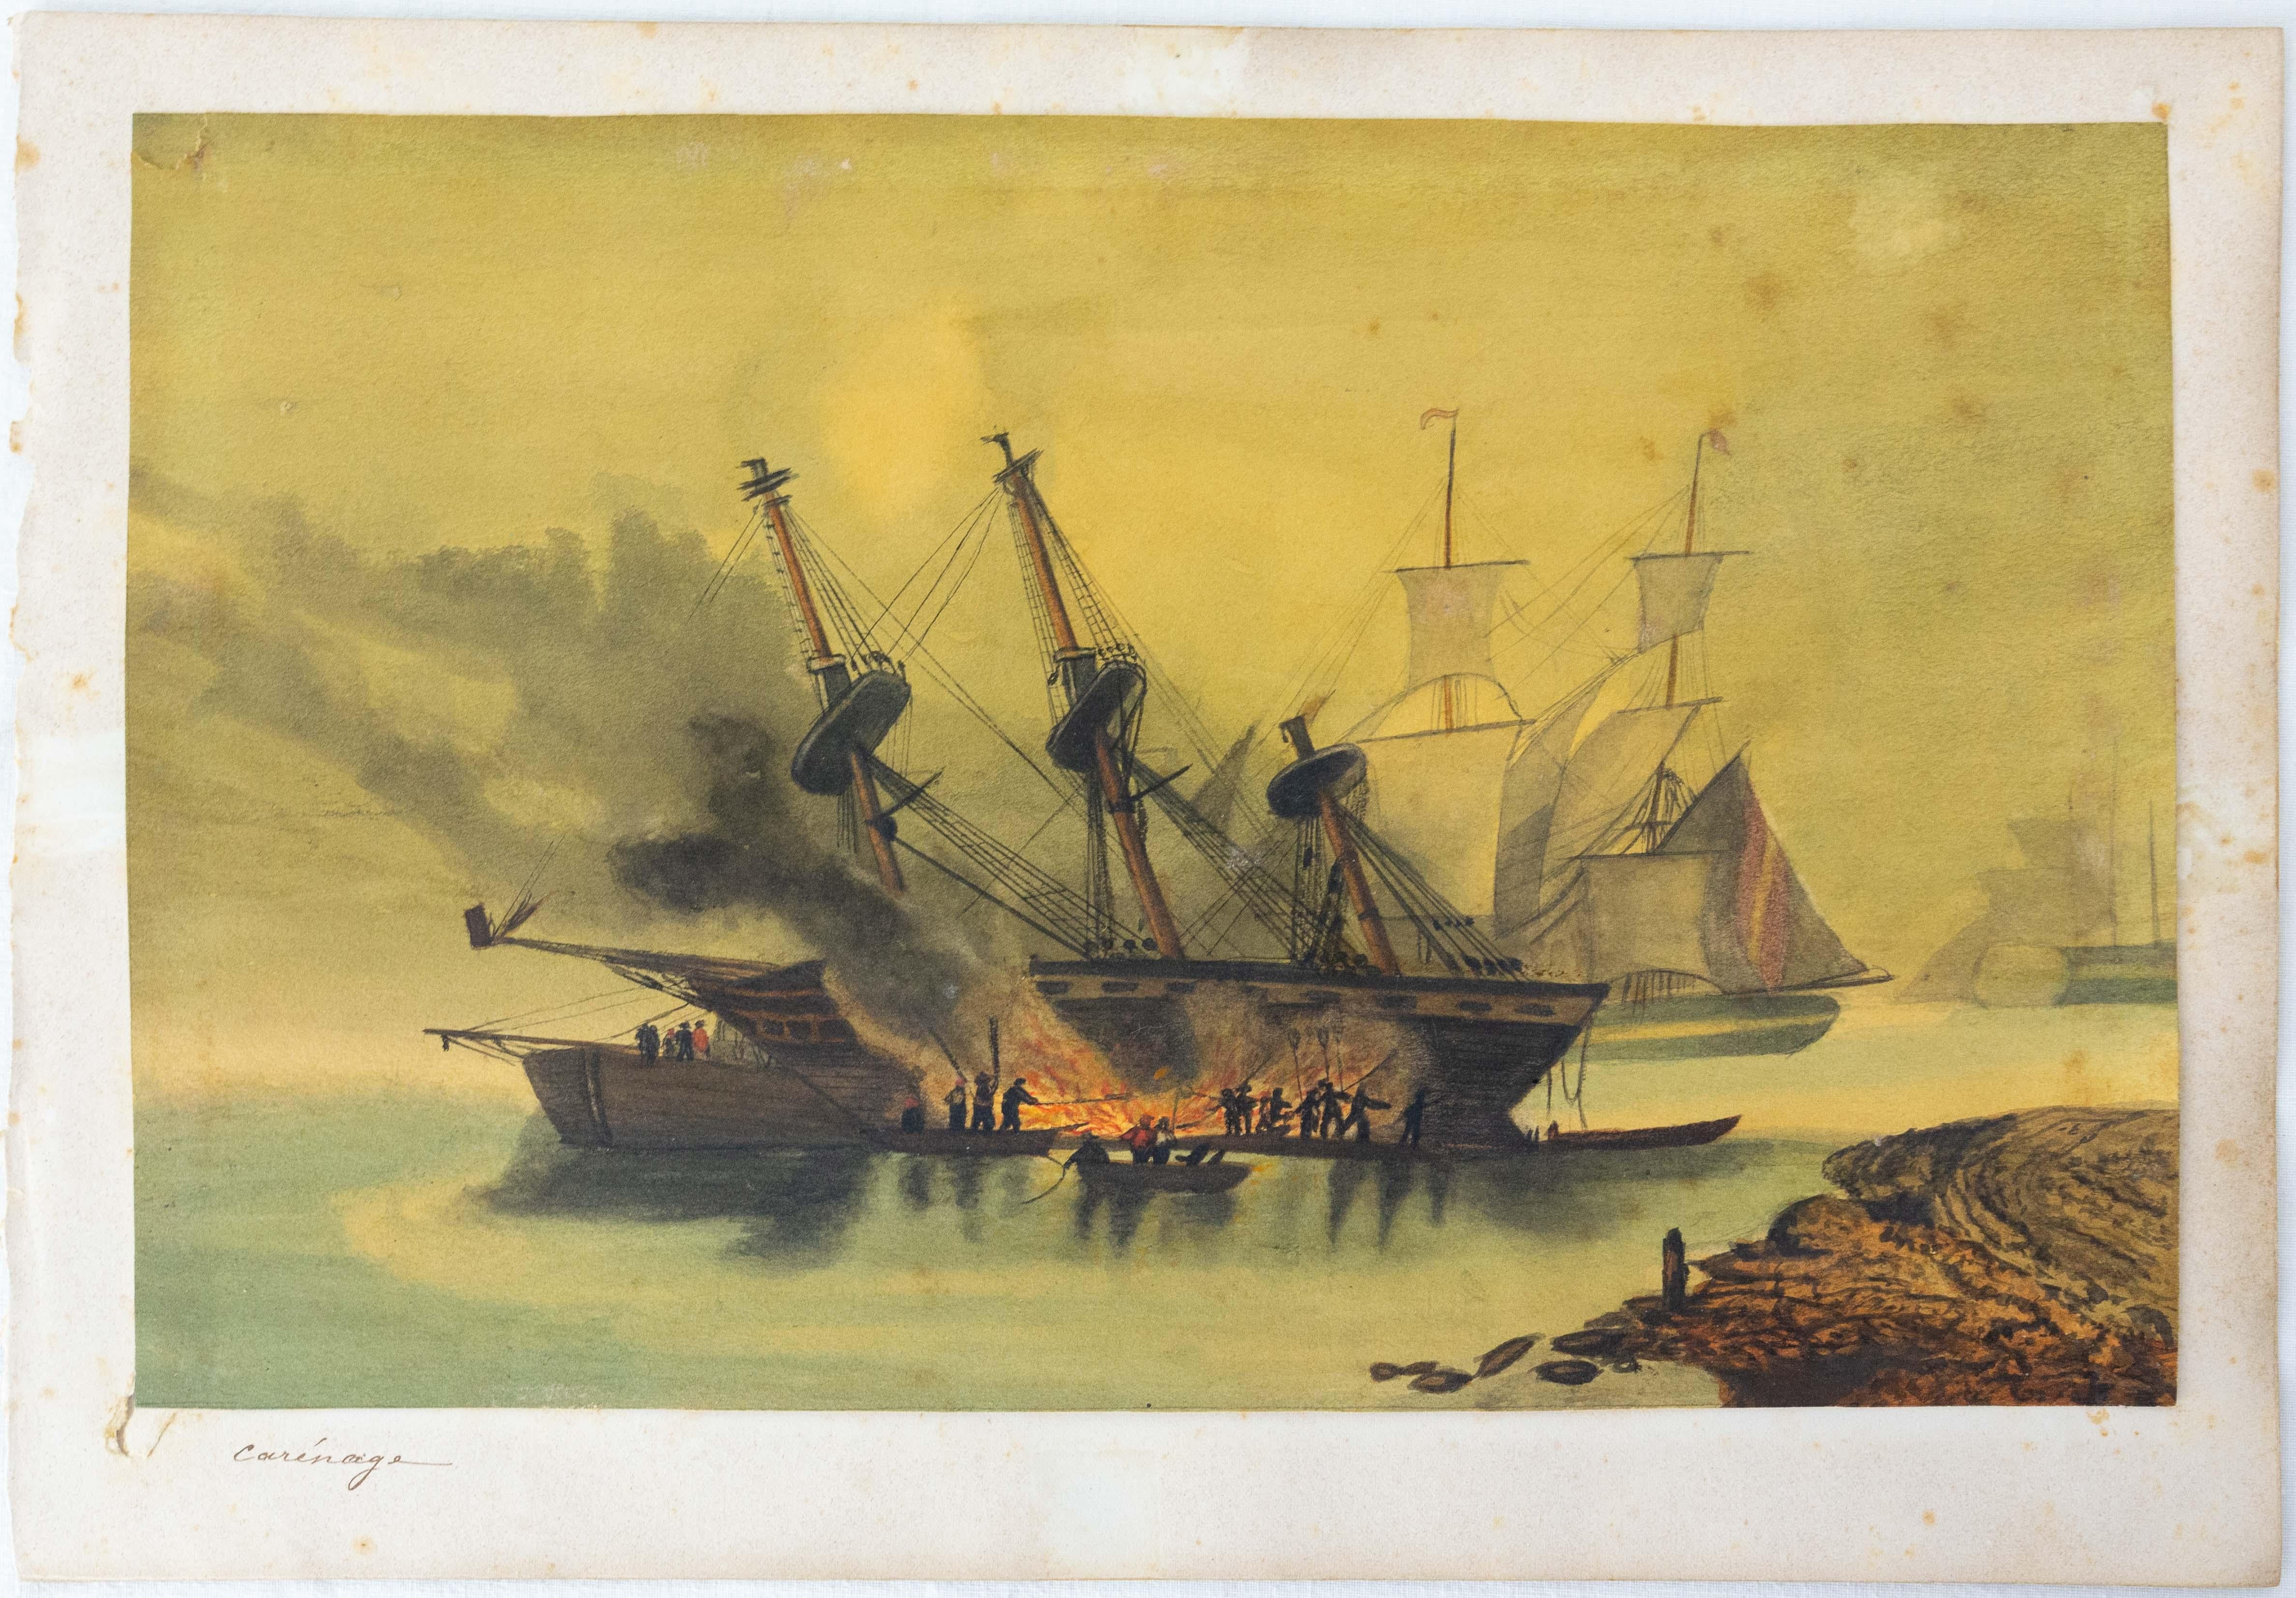 Französisch 19. Jahrhundert, Gemälde einer Bootsverkleidung.
Diese Szene stellt ein Boot dar, das am Meer mit Teer gedeckt und abgedichtet wird. Heutzutage werden die Boote so oft wie möglich ins Trockendock gelegt, um diese Art von Arbeiten